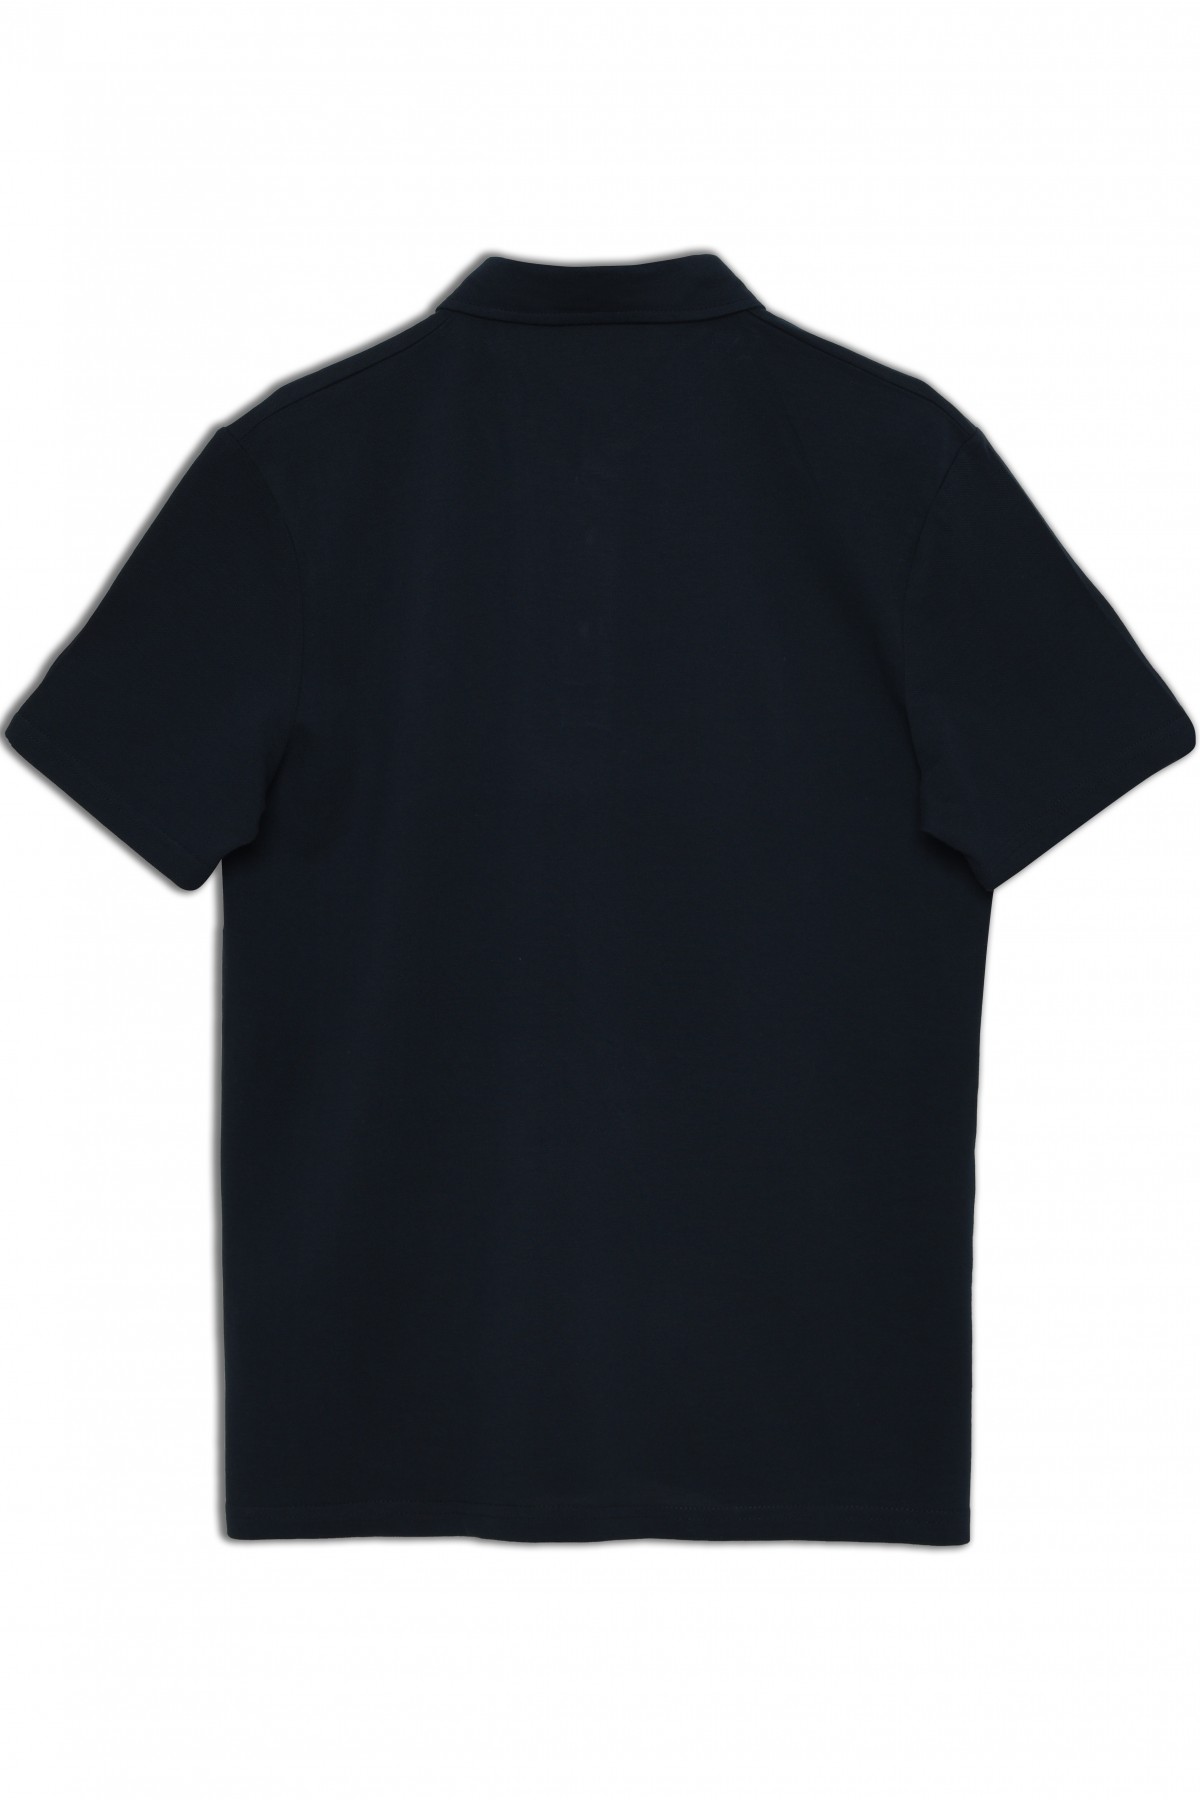 Vav Tasarım Punto Baskılı Pamuk Polo Yaka Gece Mavisi T-shirt 23'